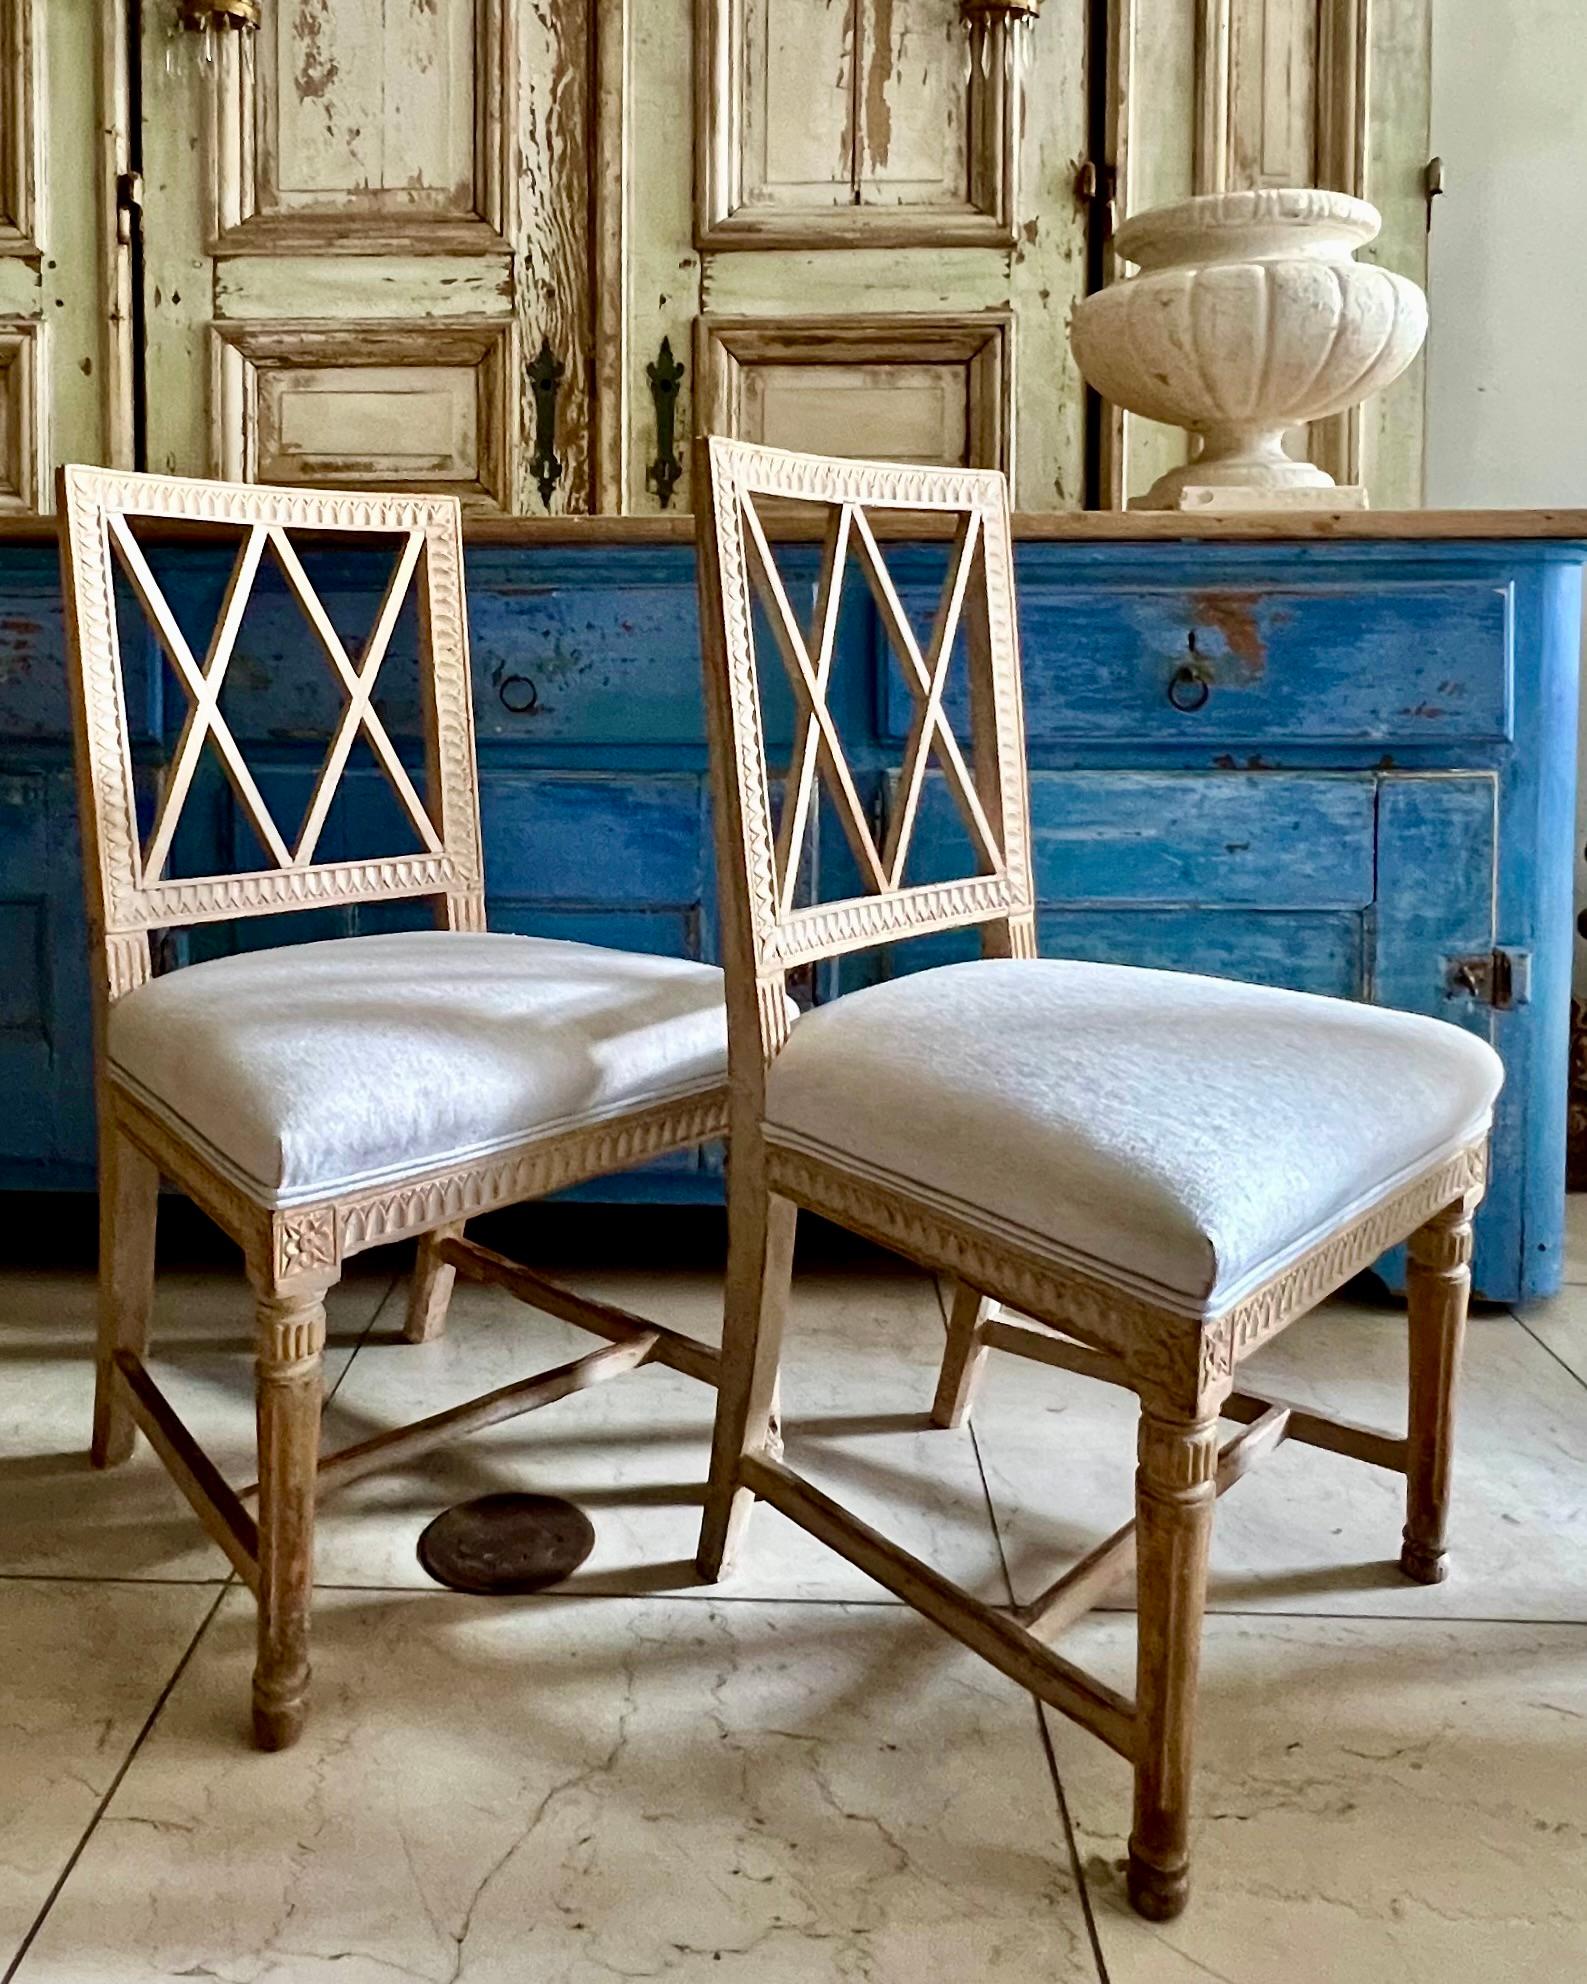 Paar schwedische Gustavianische Lindome Stühle aus dem frühen 19. Jahrhundert mit rechteckiger Rückenlehne, die von kreuzförmig durchbrochenen Leisten umgeben ist, und mit Rahmen, die mit klassischen Gustavianischen Motiven geschnitzt sind.
Hand